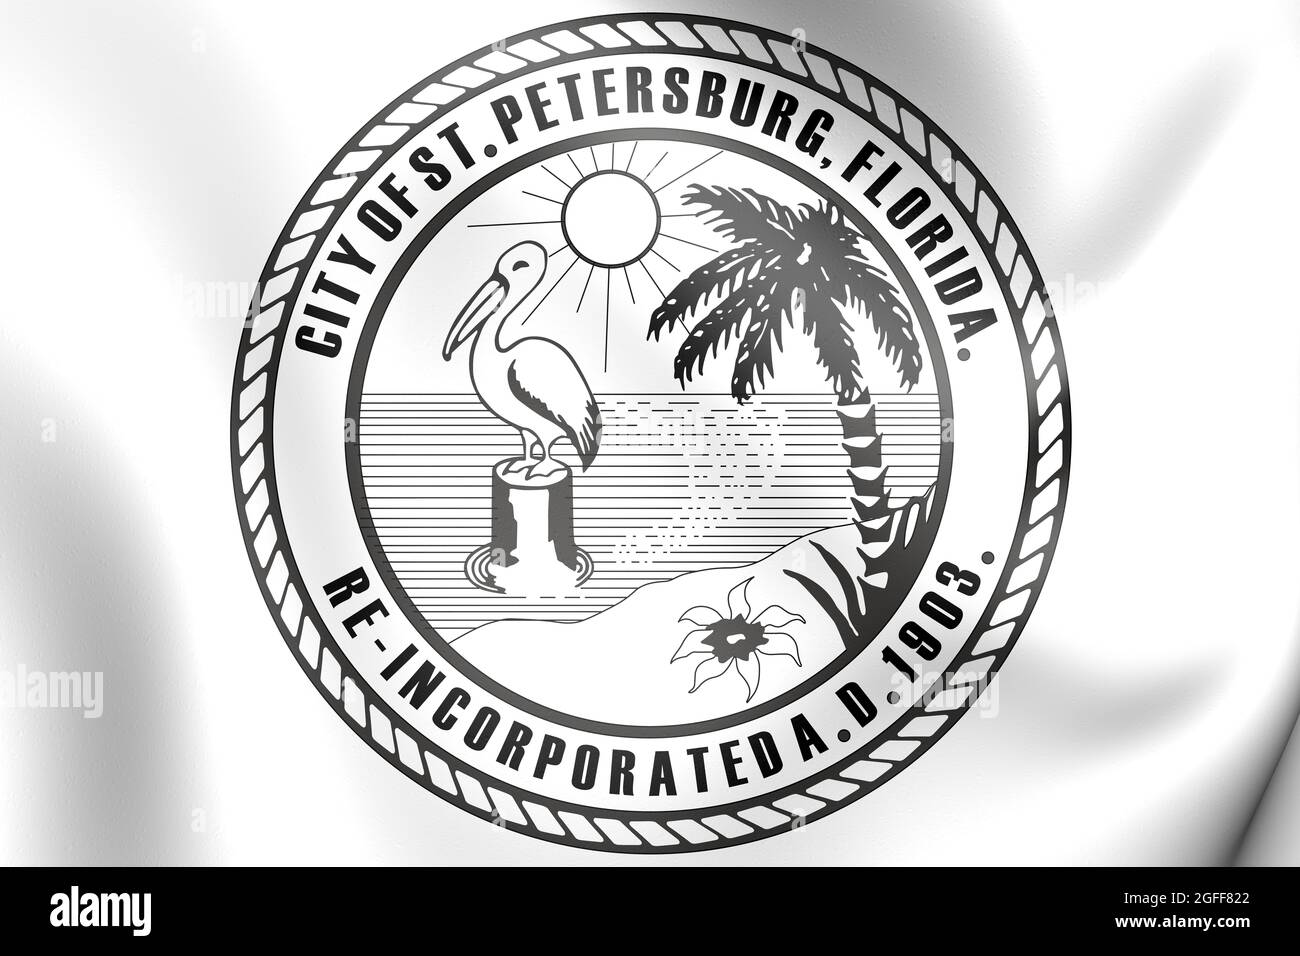 3D Seal of St Petersburg (Floride), États-Unis. Illustration 3D. Banque D'Images